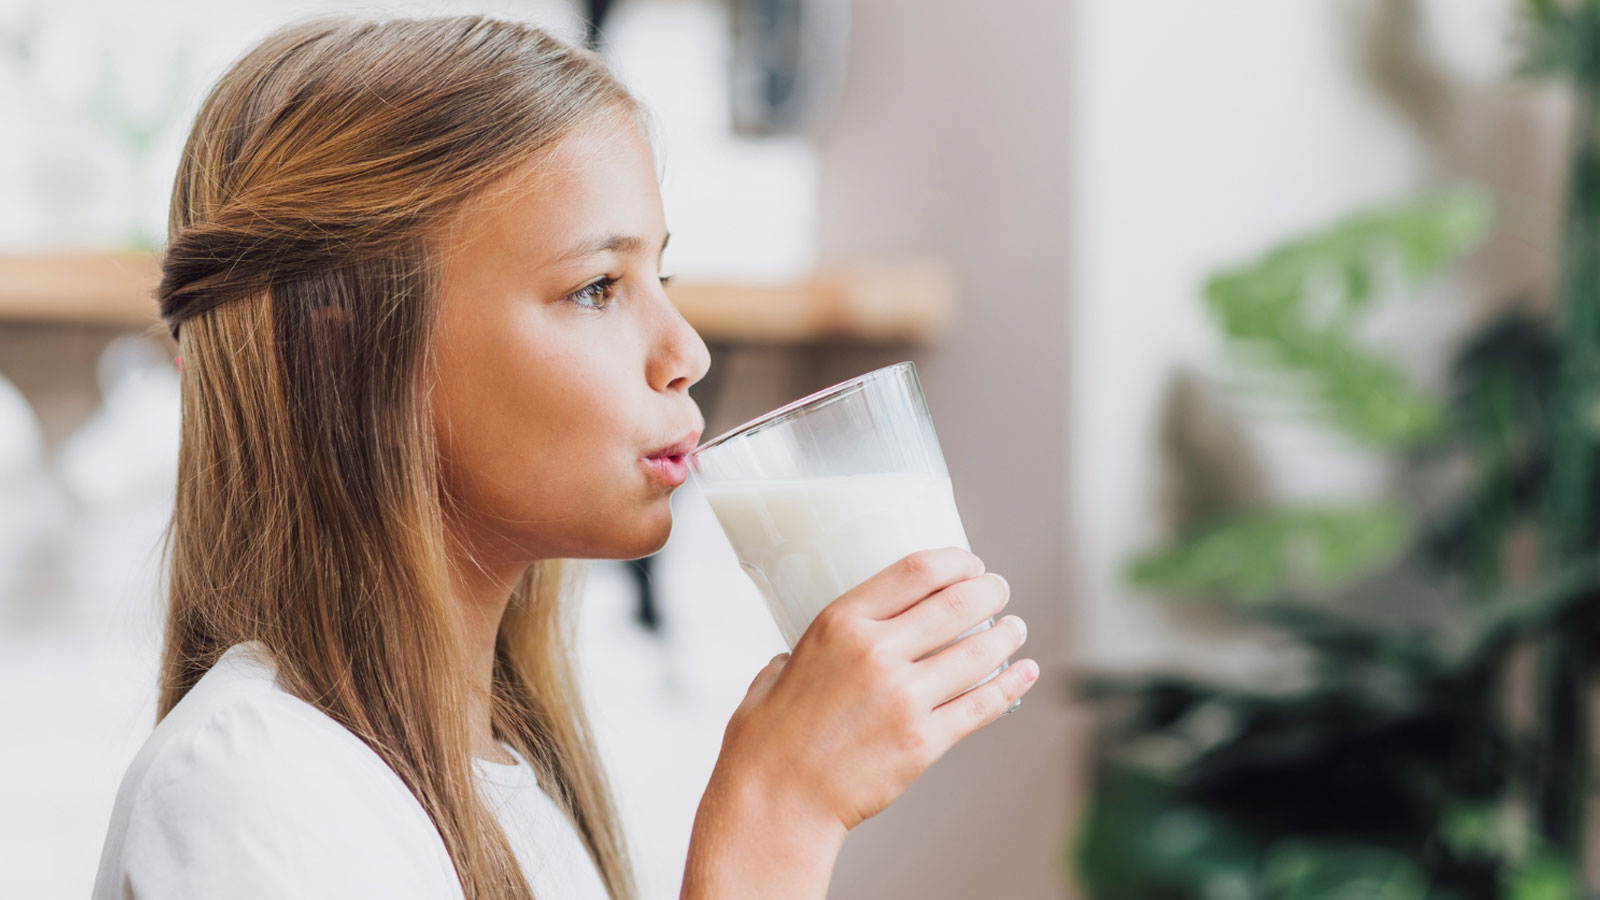 Süt metabolizmayı hızlandırıyor, kilo vermeye yardımcı oluyor. Ancak sütün fazla miktarda tüketimi yahut balla veya pekmezle beraber içilmesi kilo aldırabiliyor.